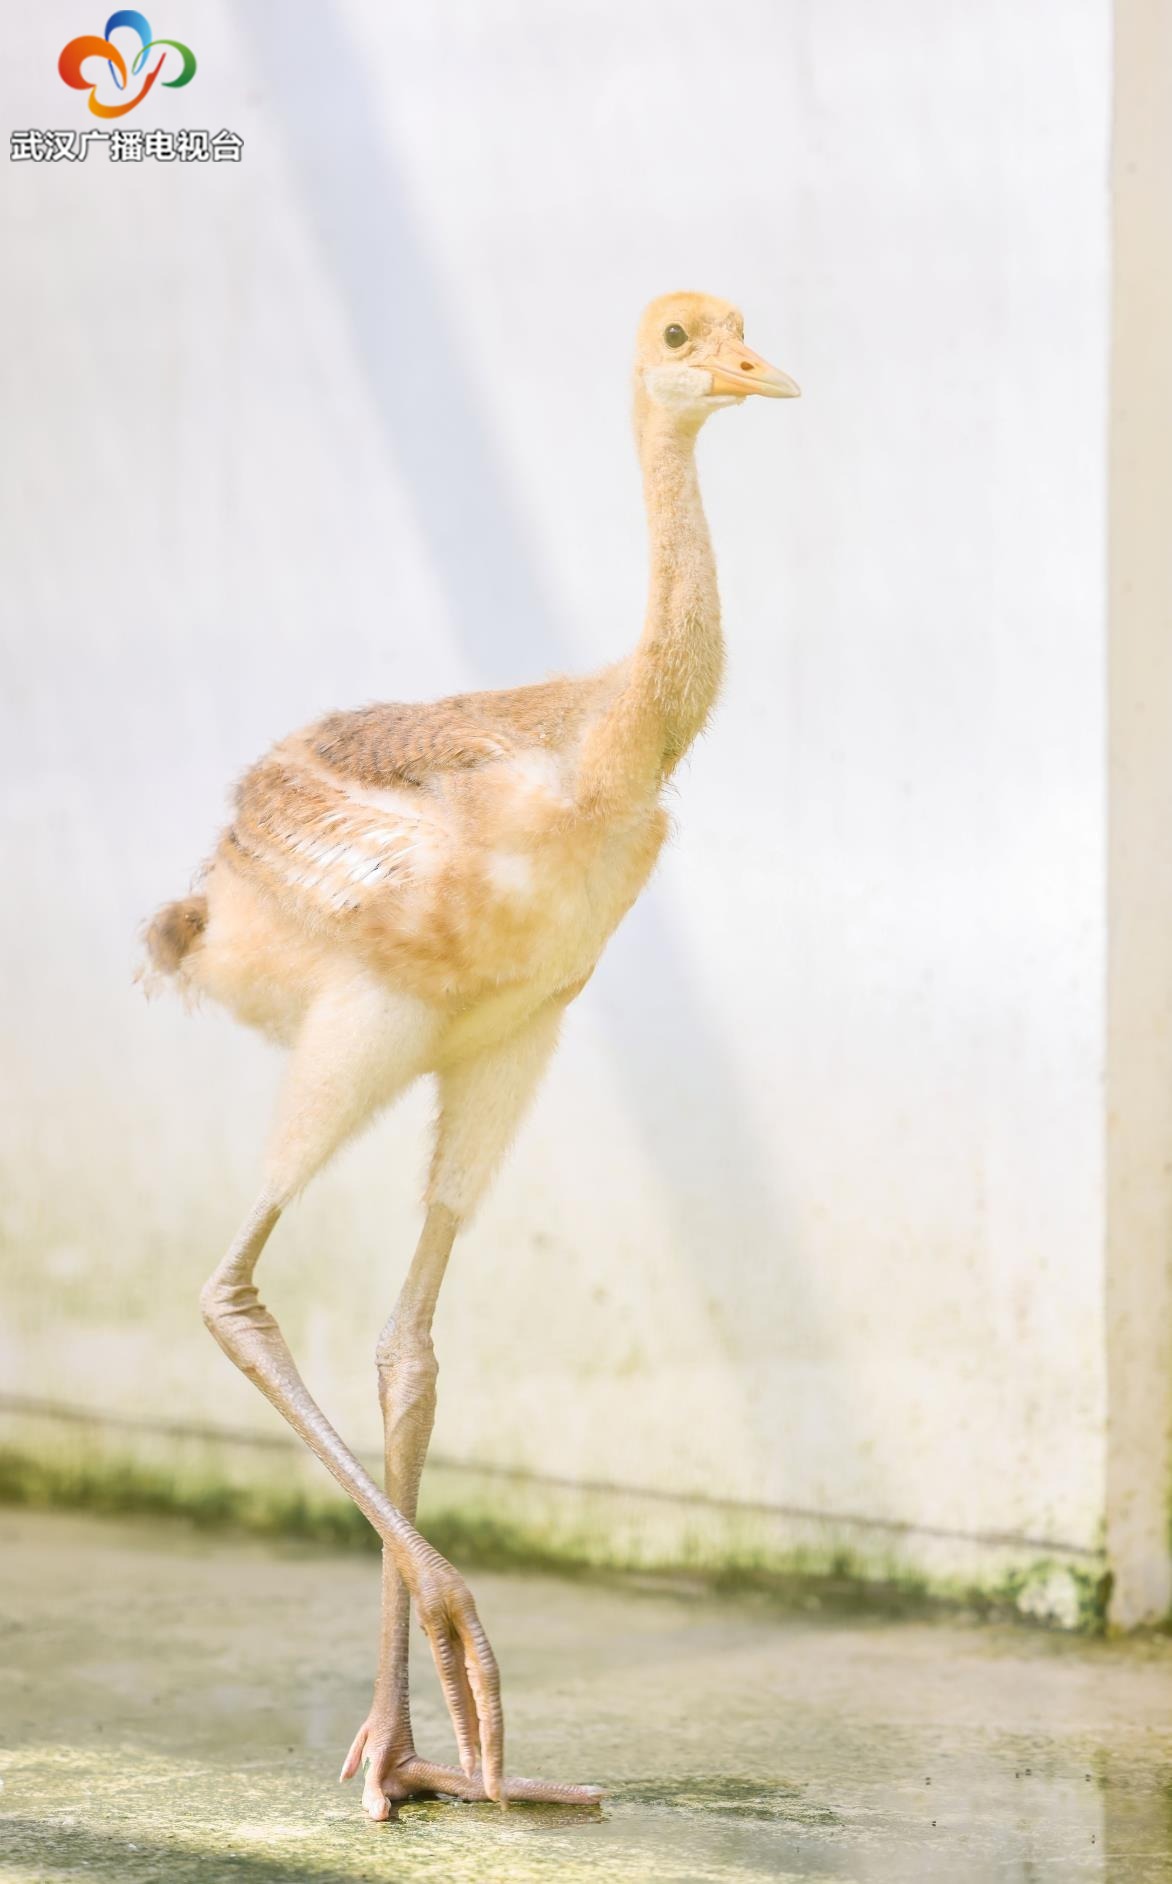 武汉动物园迎来新生命 丹顶鹤家族今年新添5只“小黄鹤”